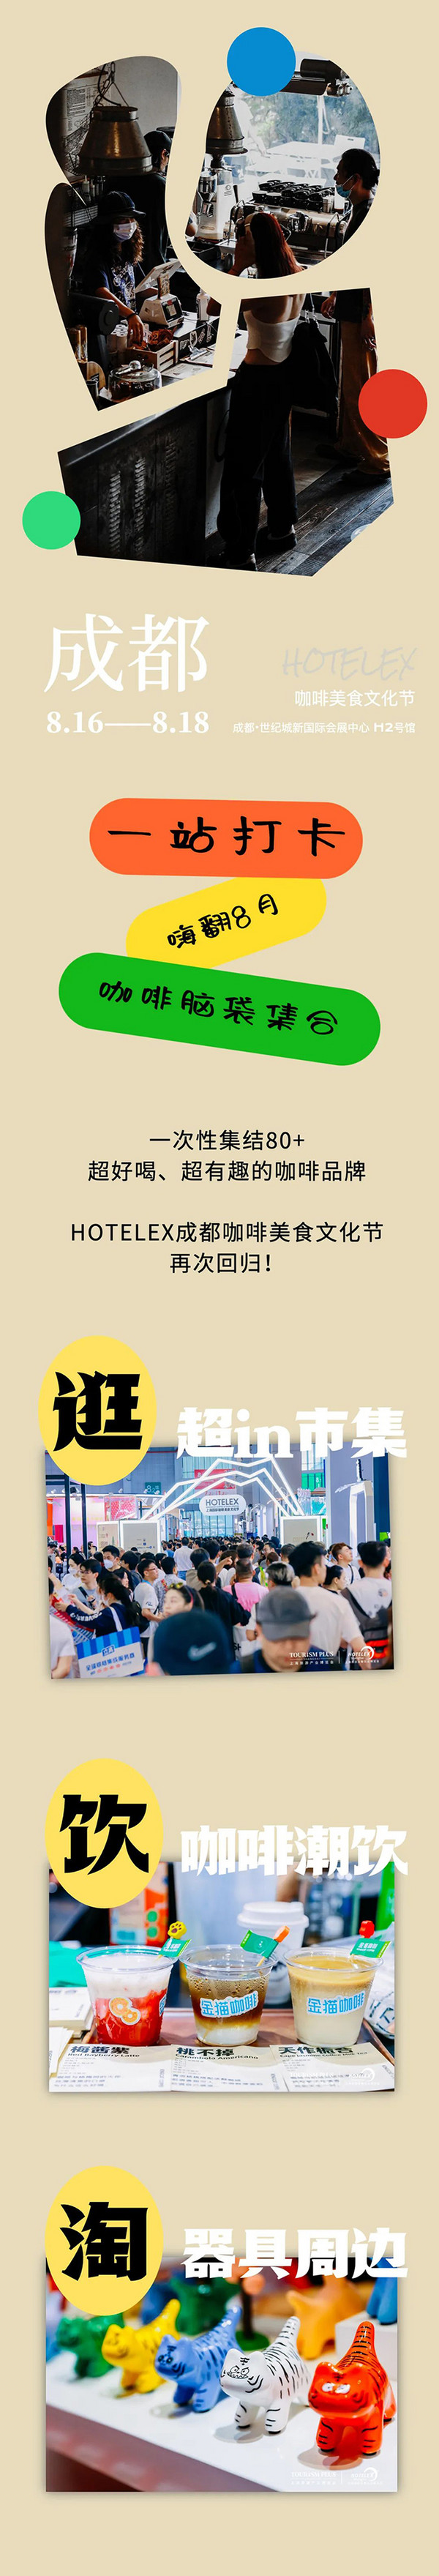 连开3天 High翻蓉城 HOTELEX成都咖啡美食文化节超强阵容来袭～